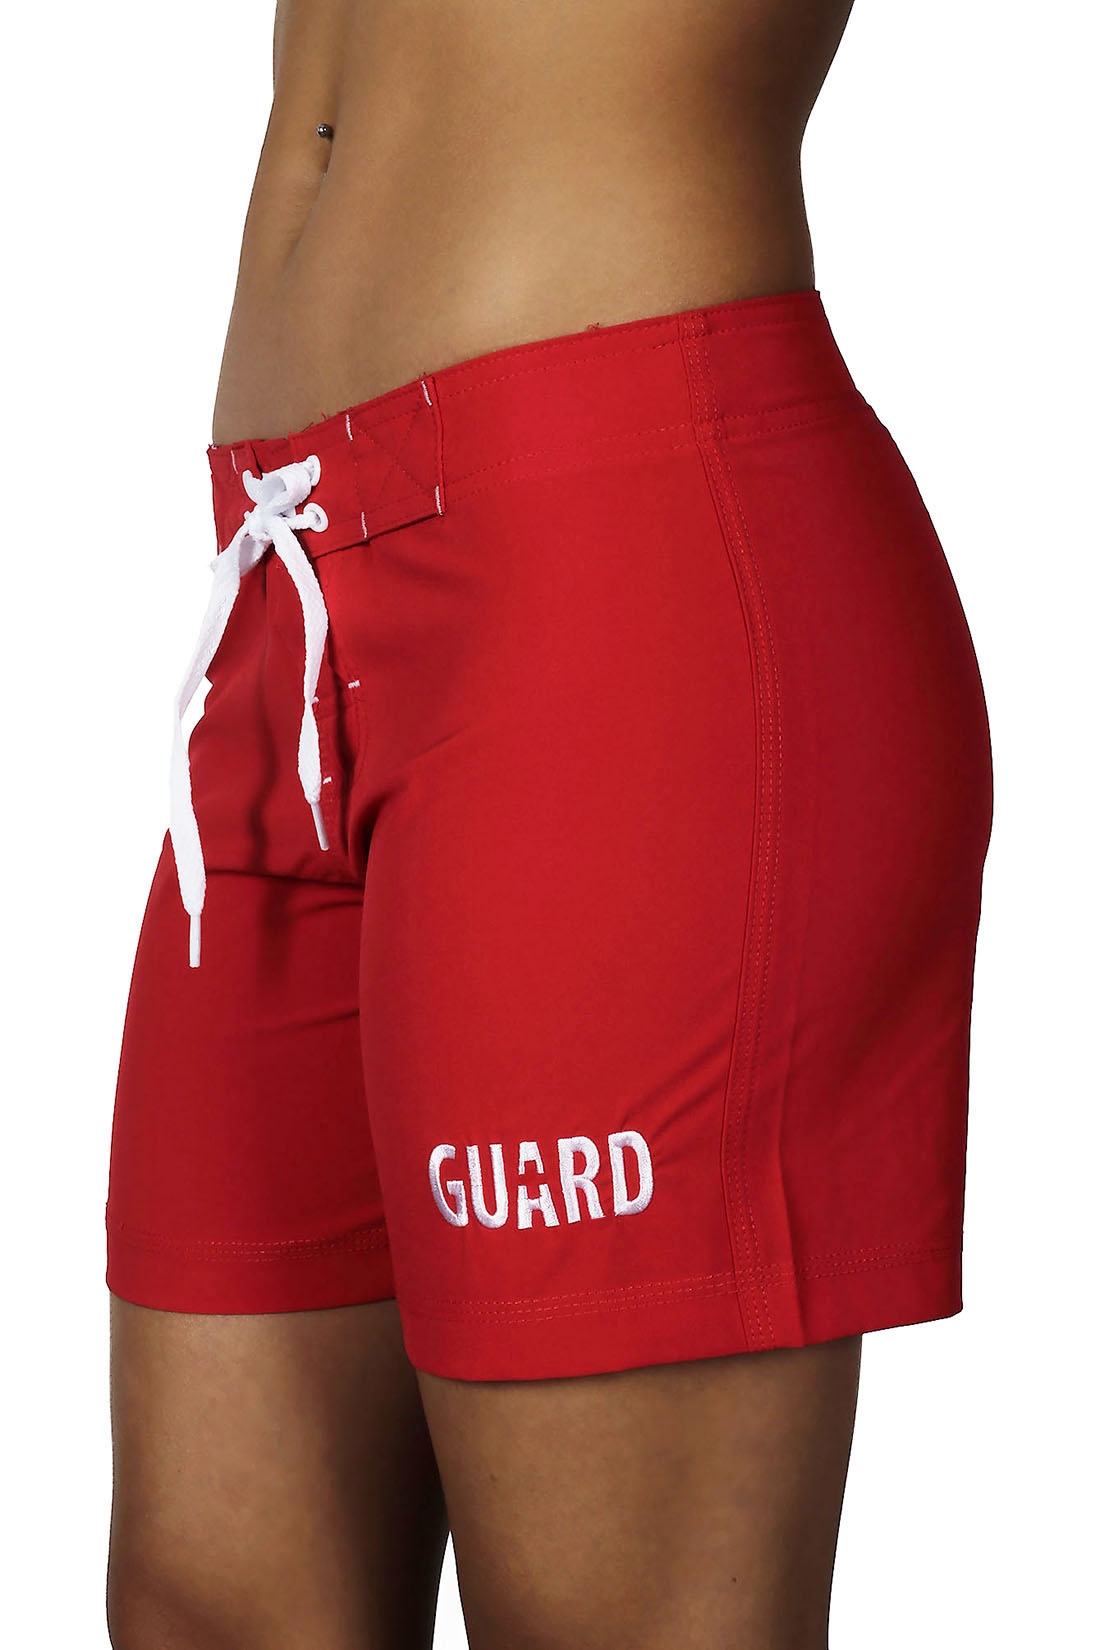 Ultrastar Women's Guard 5-Inch Board Shorts Stretch Swimsuit